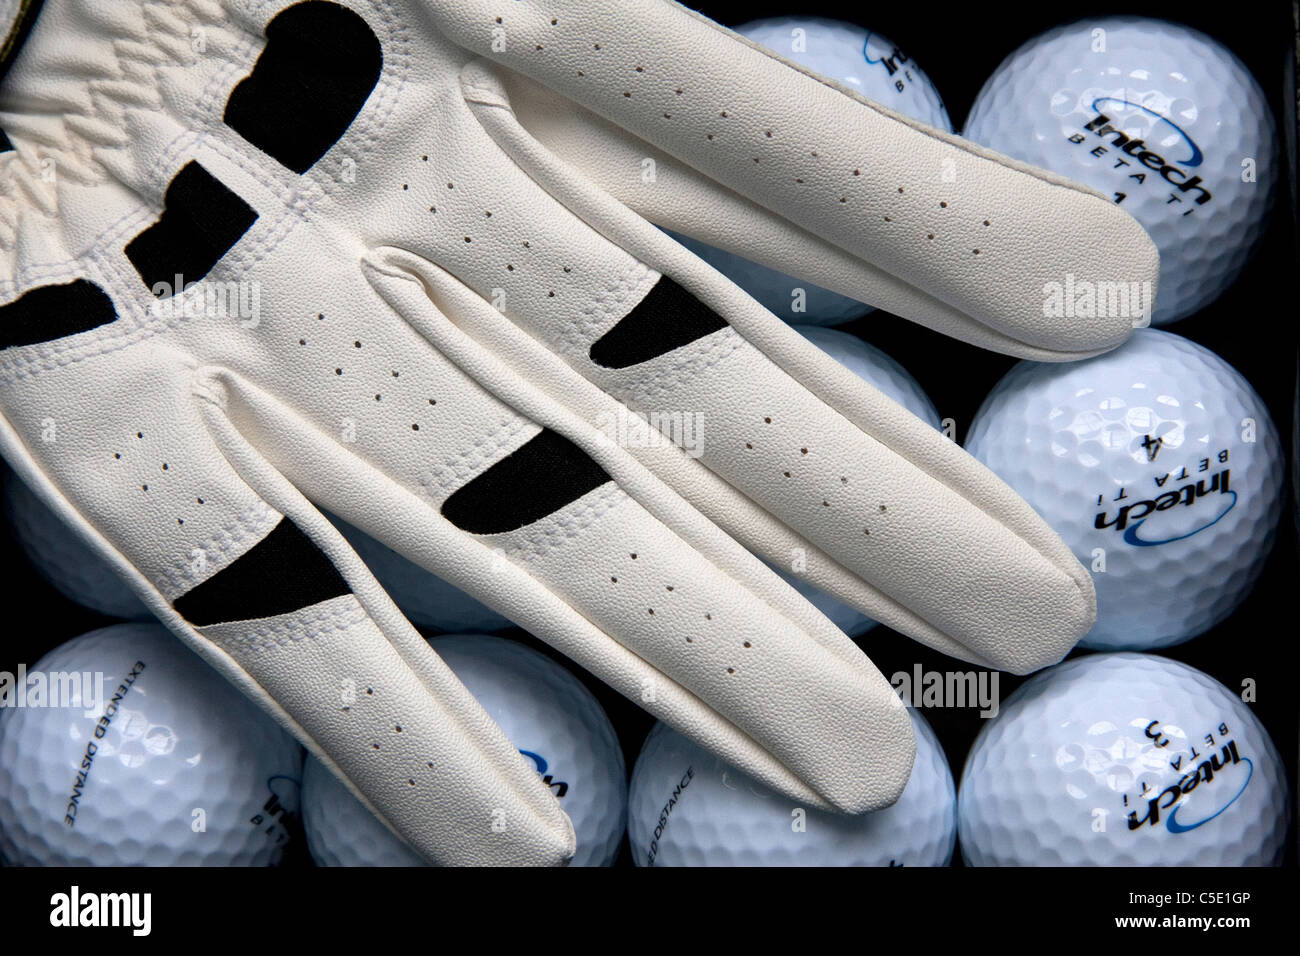 Ein Hintergrund von glänzenden neuen Golfbällen, übersichtlich in Reihen, stellen eine geeignete Kulisse für ein Golfer Handschuh. Stockfoto